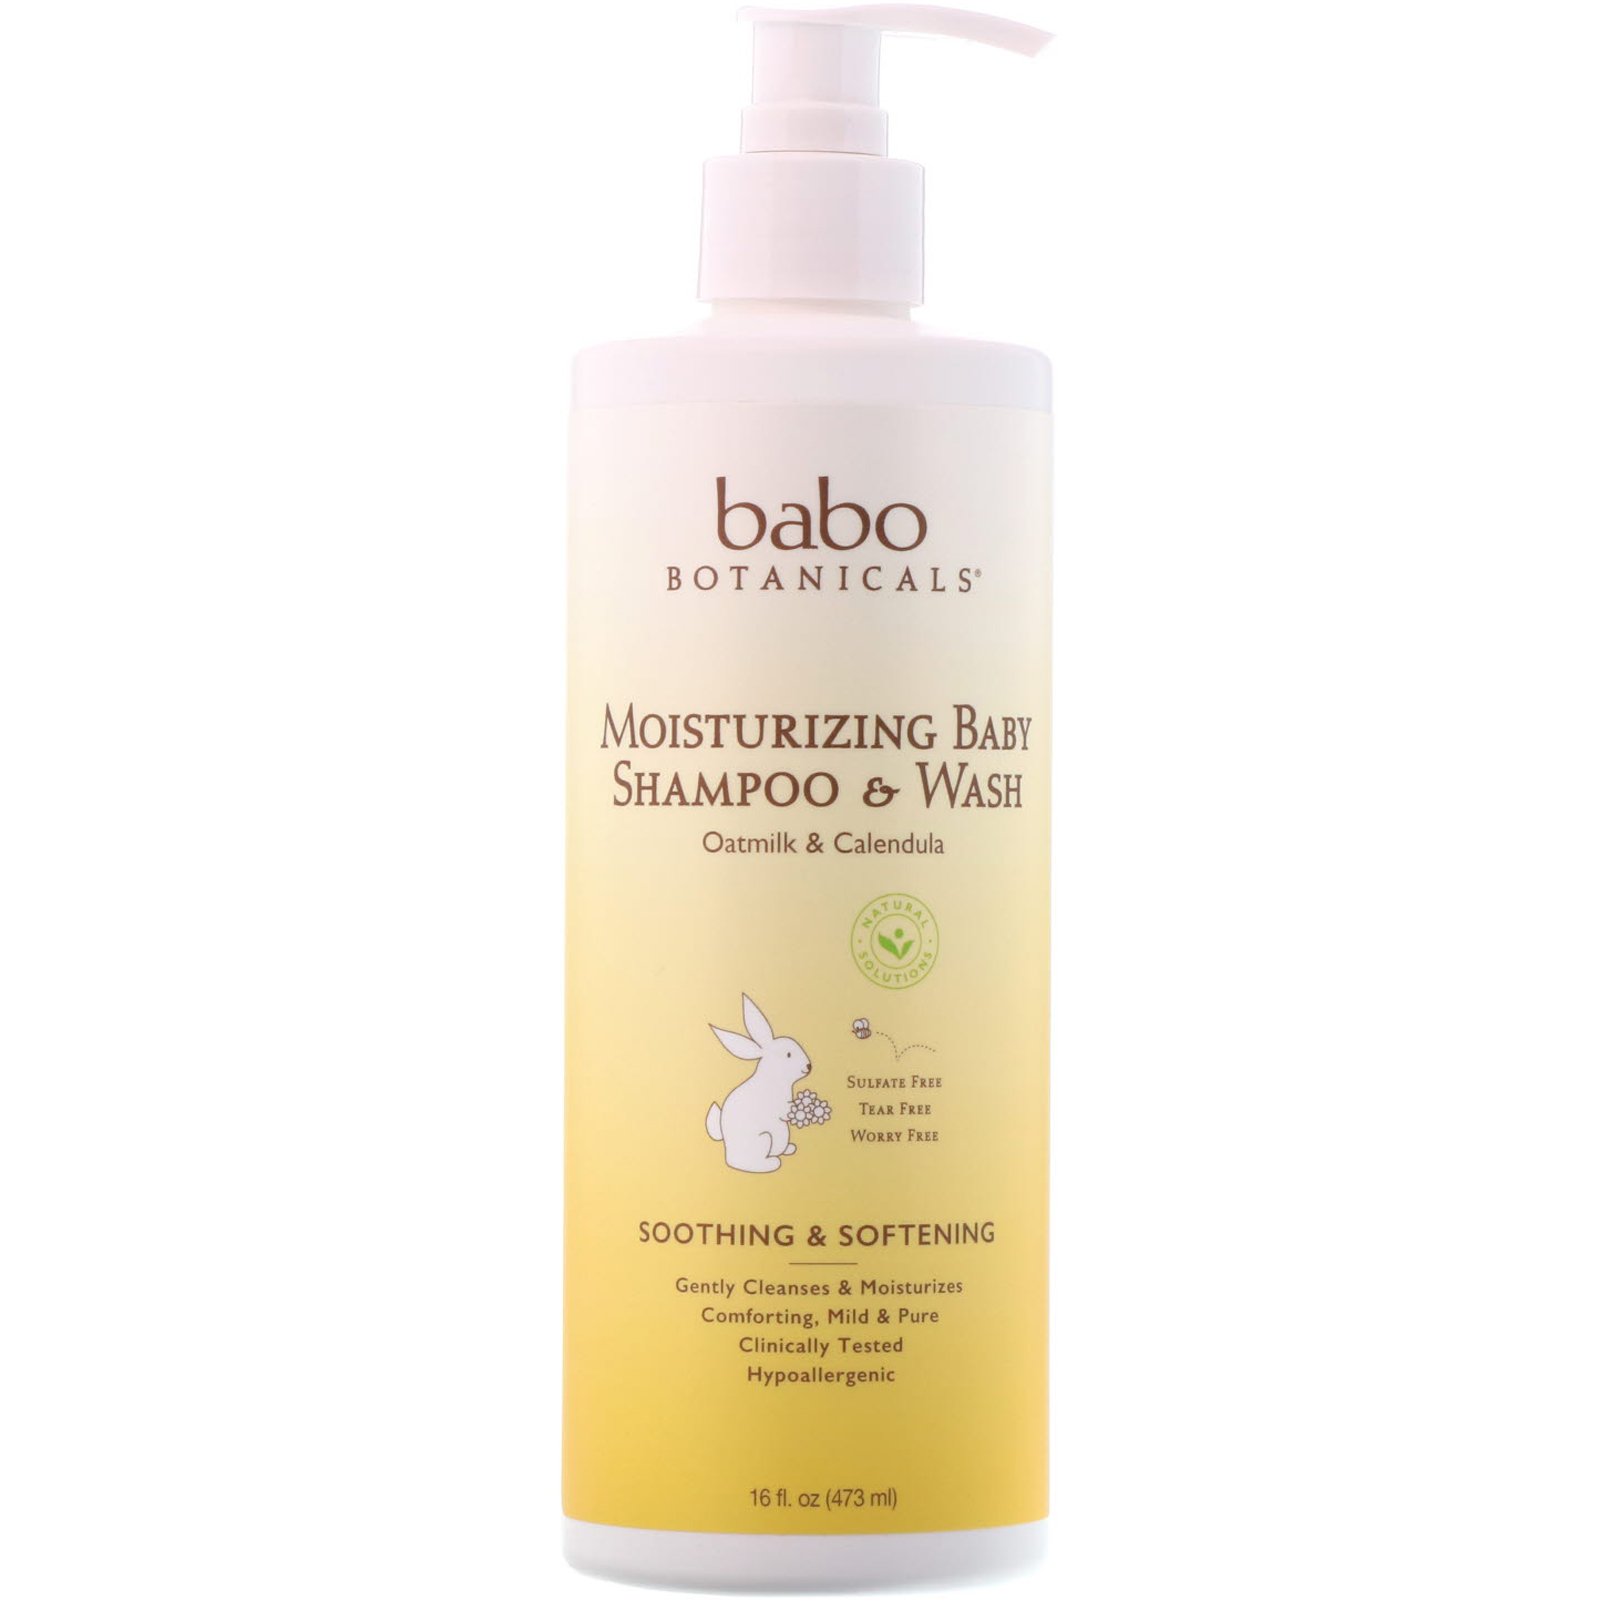 babo botanicals moisturizing baby shampoo